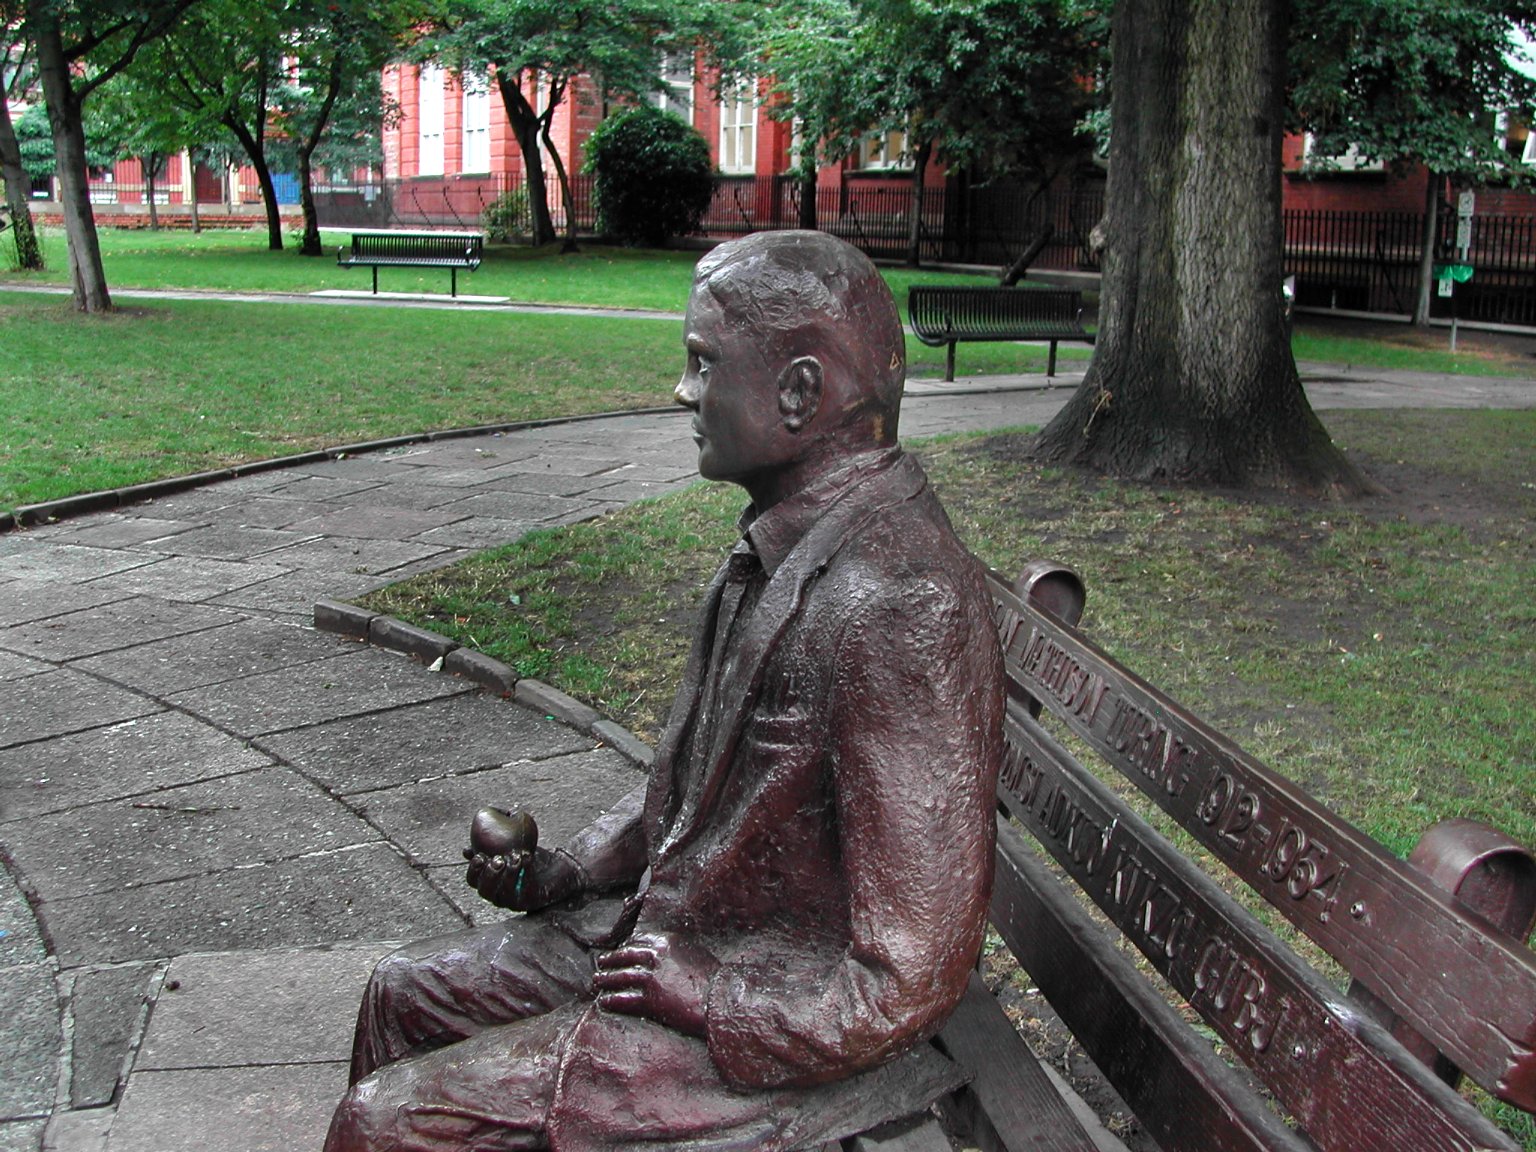 Alan Mathison Turing Memorial